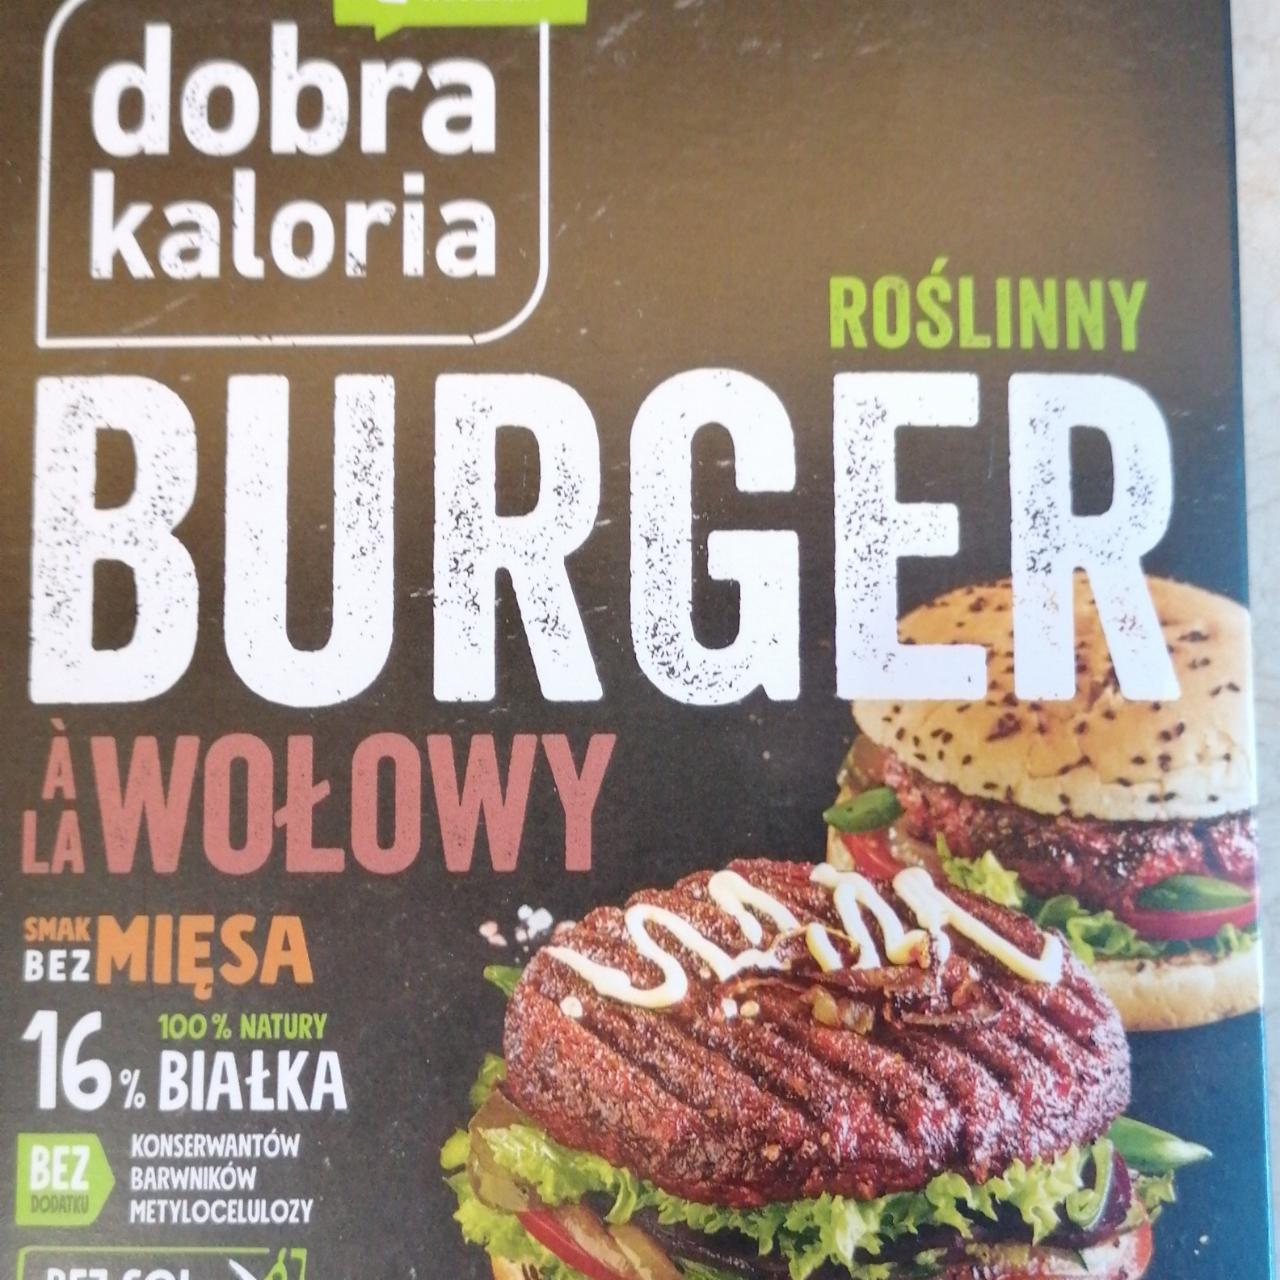 Zdjęcia - Roślinny burger à la wołowy Dobra Kaloria